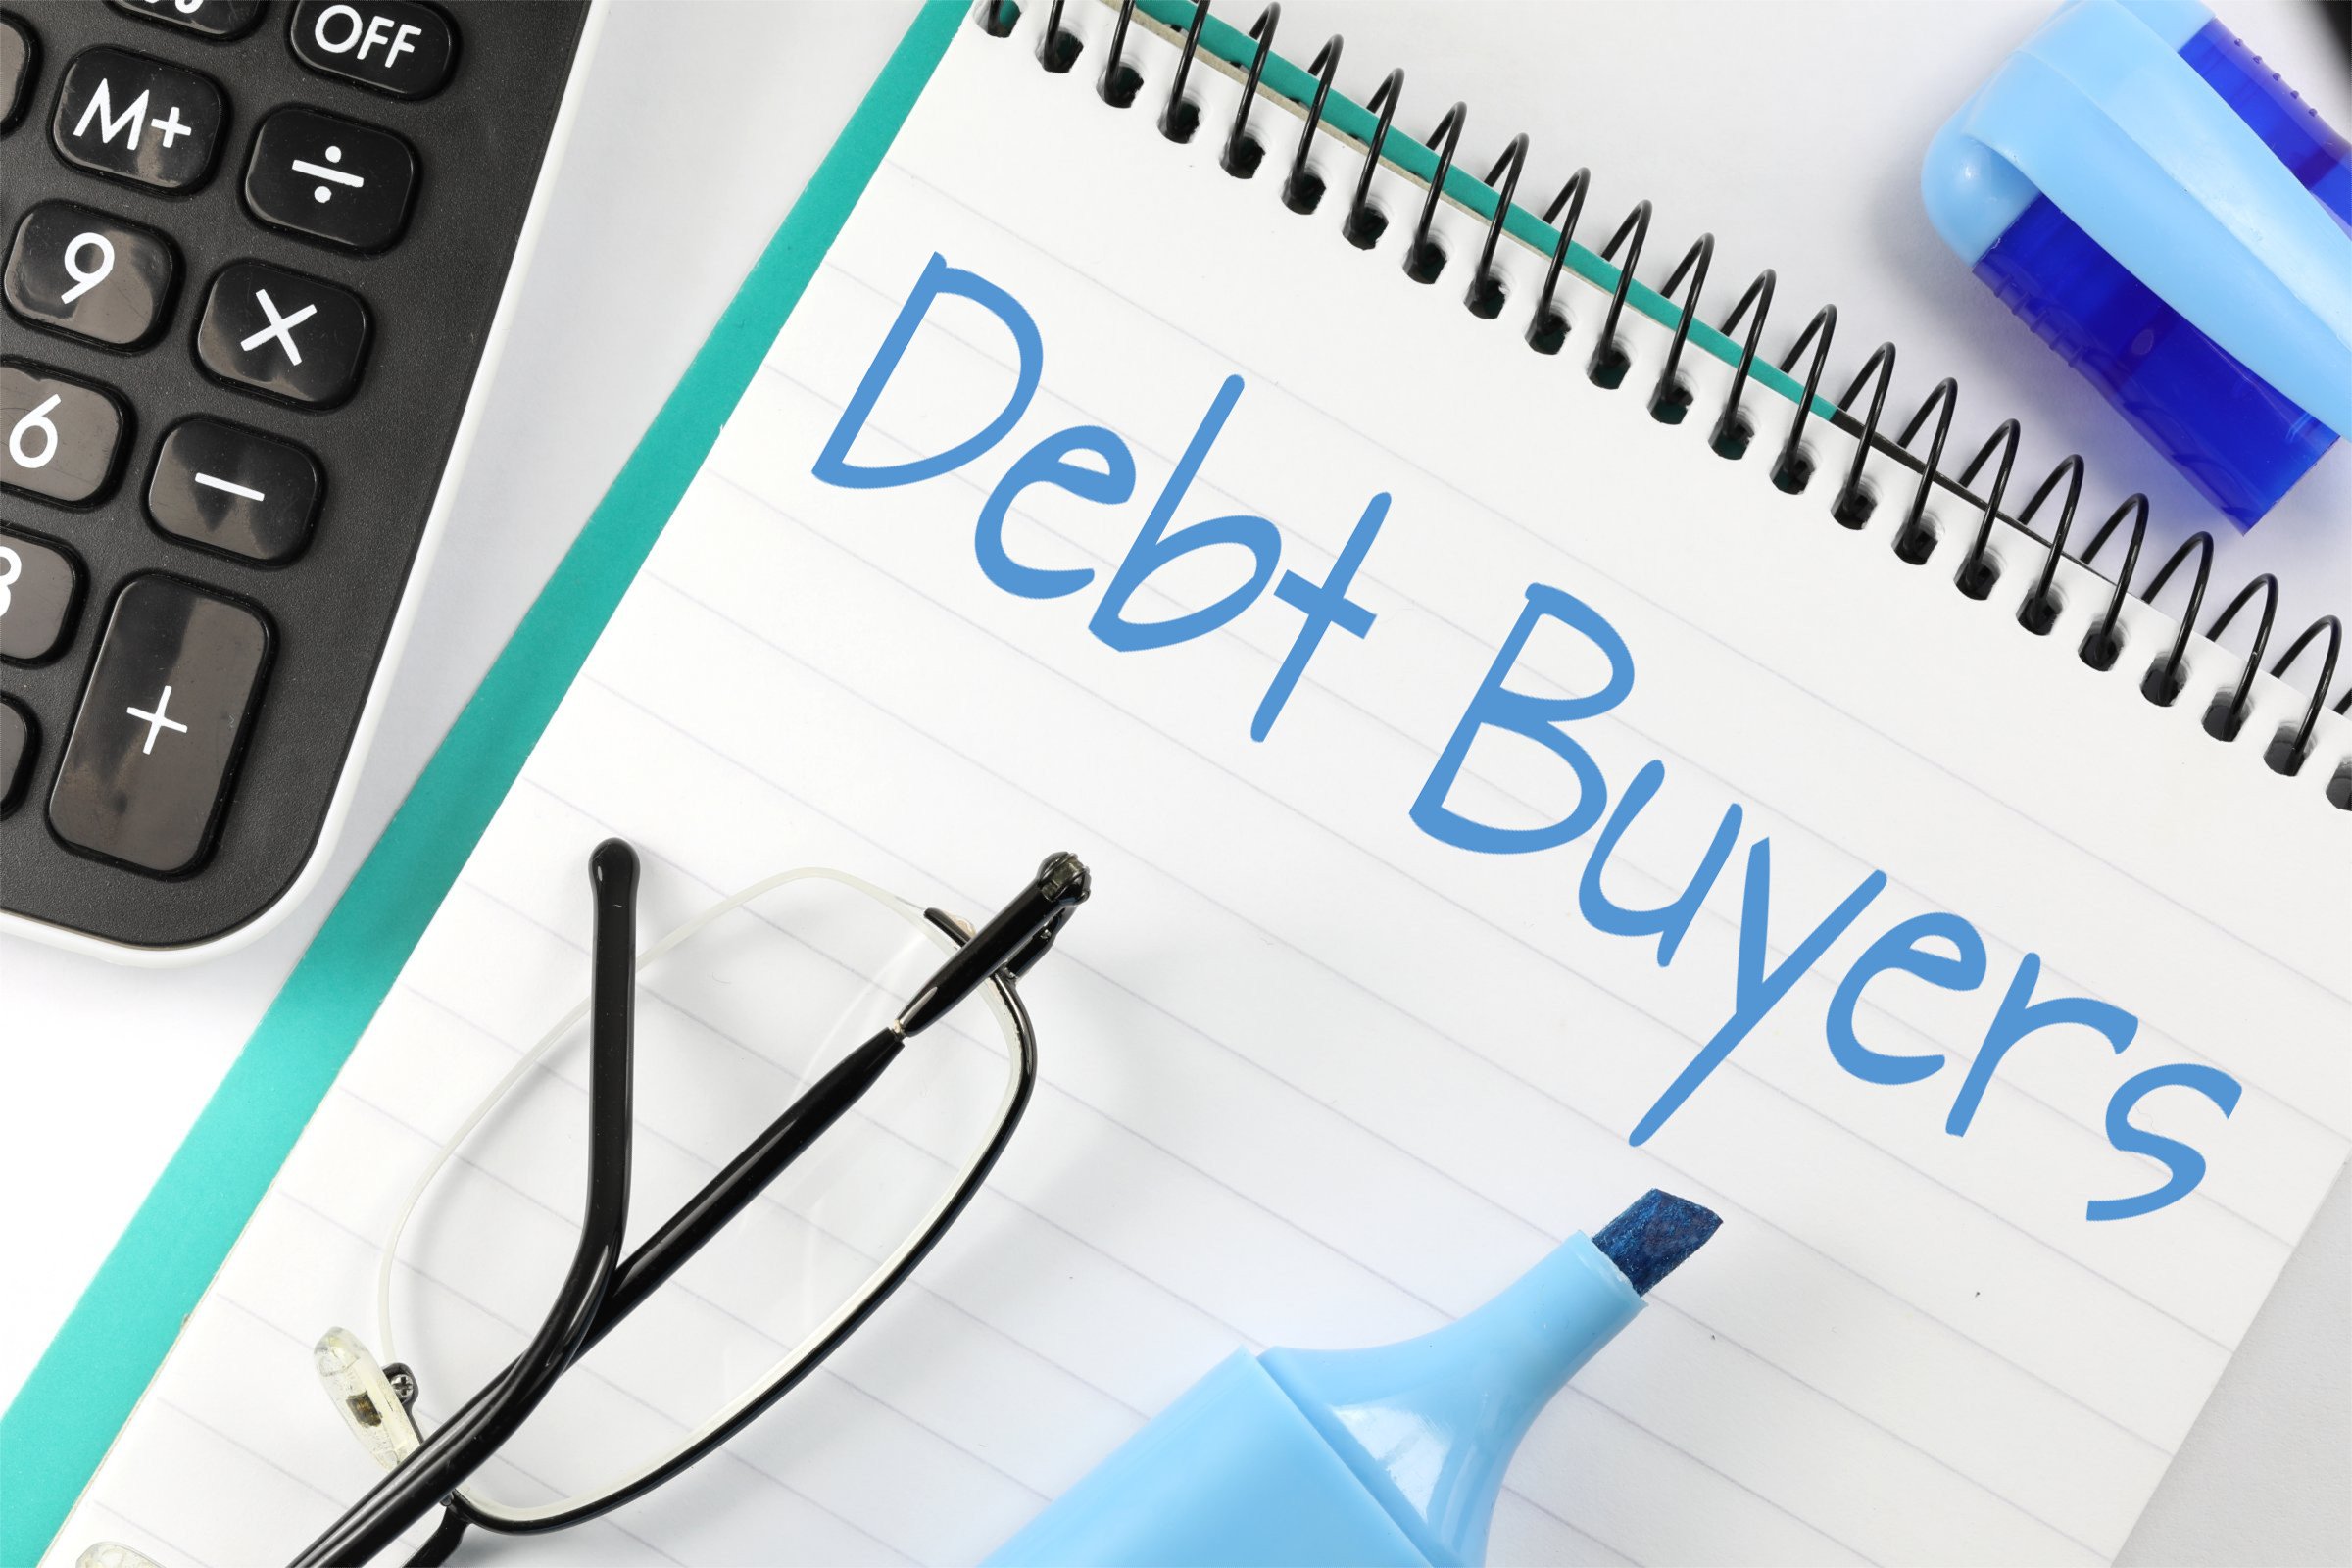 debt buyers